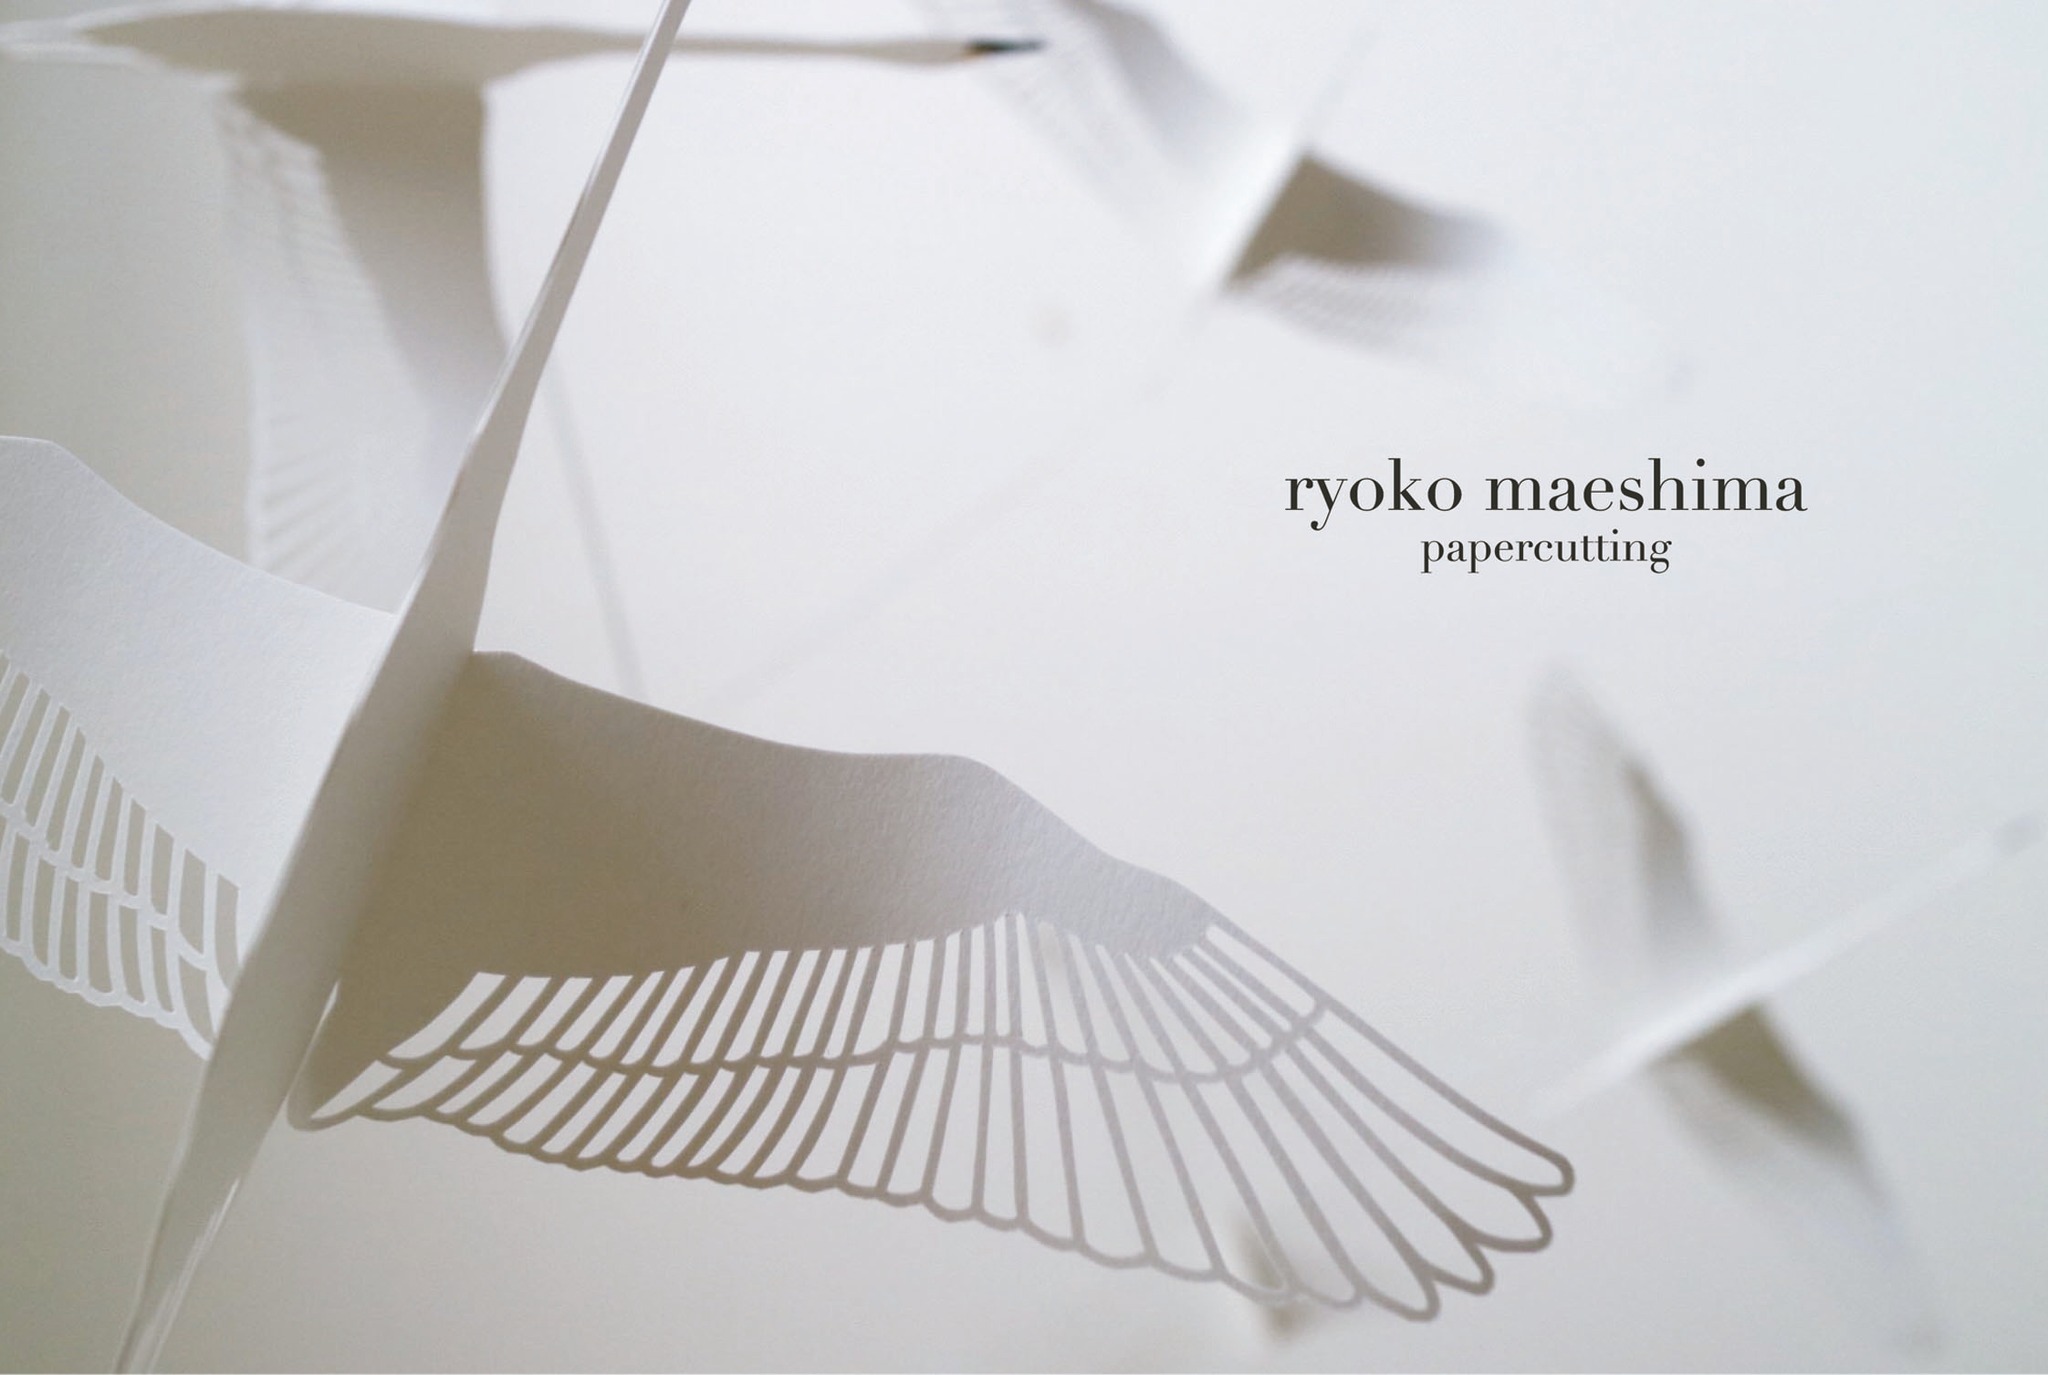 ryoko maeshima papercutting